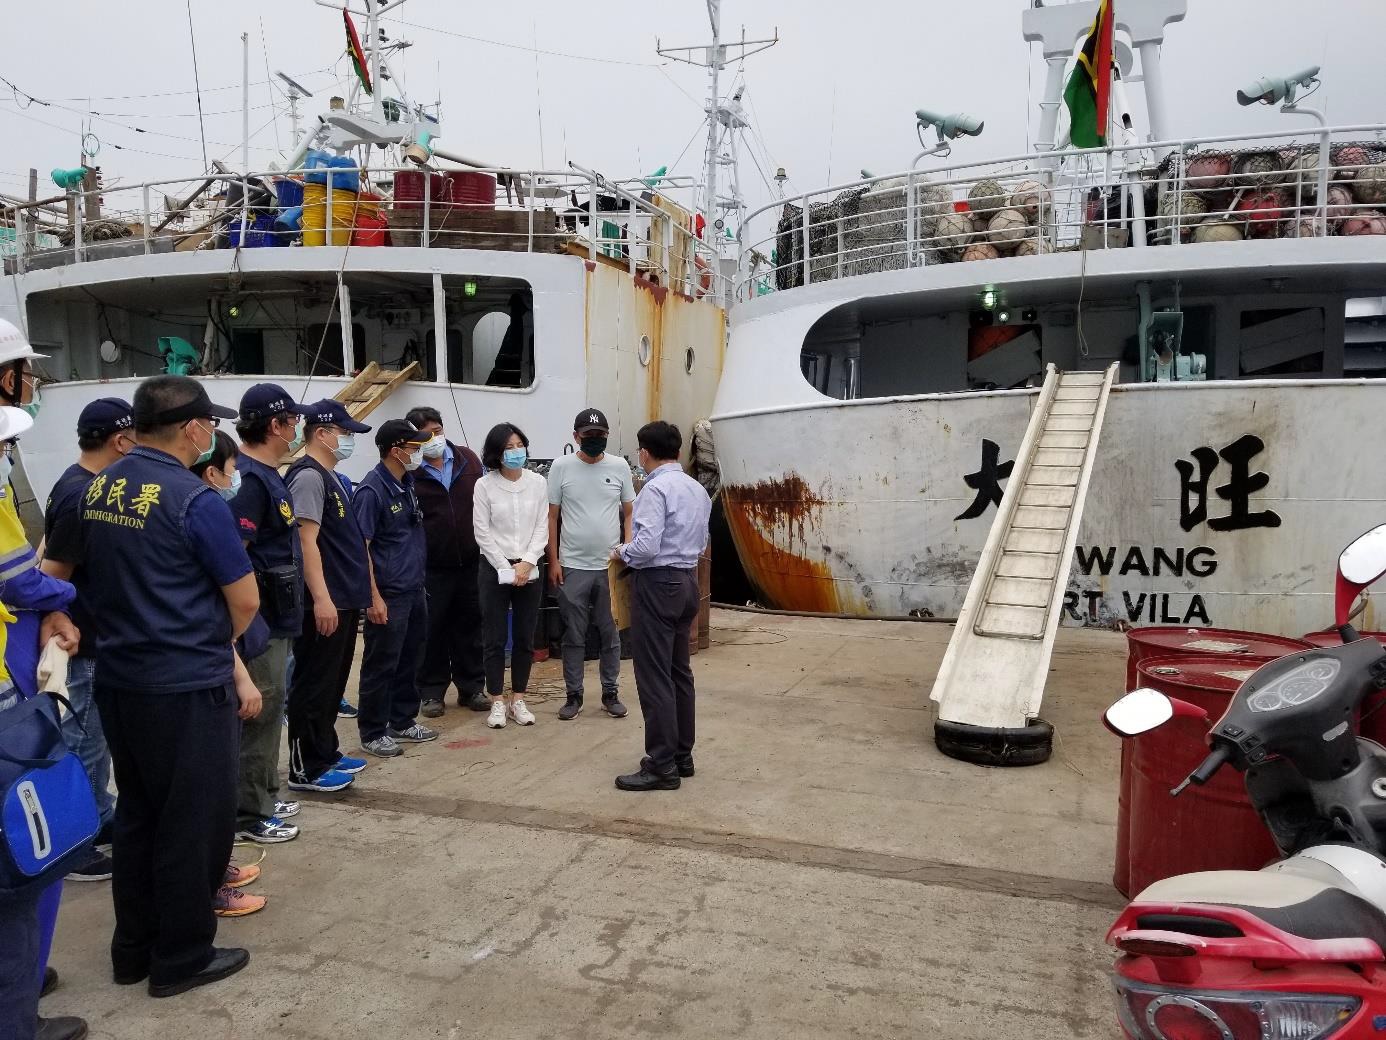 臺灣移民署調查遠洋漁船「大旺號」強迫勞動情況。